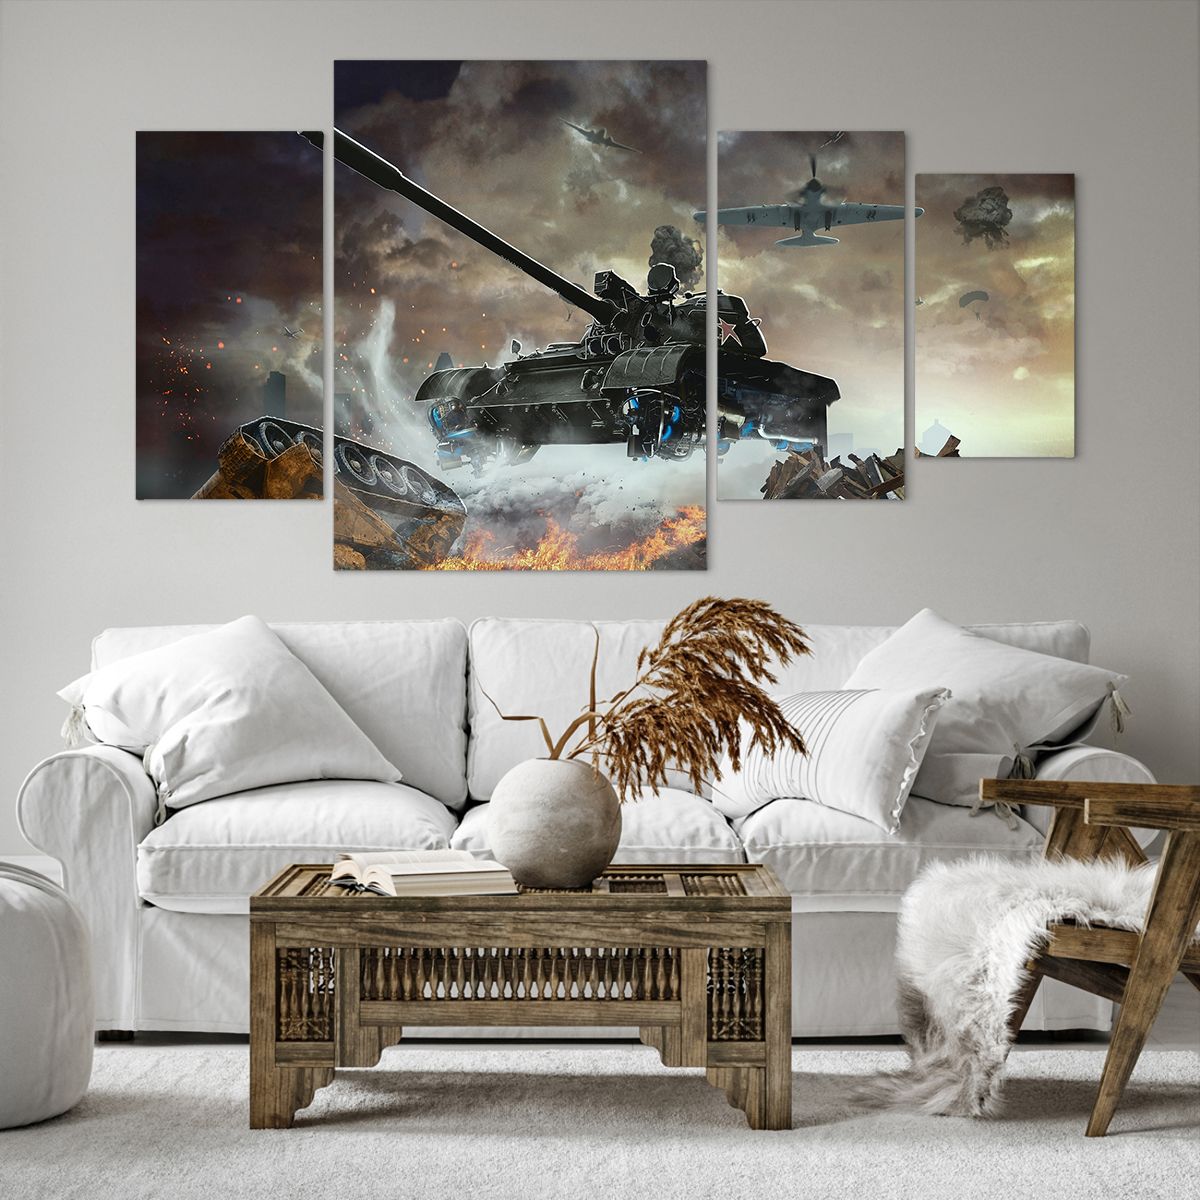 Obrazy na płótnie Militaria, Obrazy na płótnie Wojna, Obrazy na płótnie Czołg, Obrazy na płótnie Samolot Wojskowy, Obrazy na płótnie Bitwa